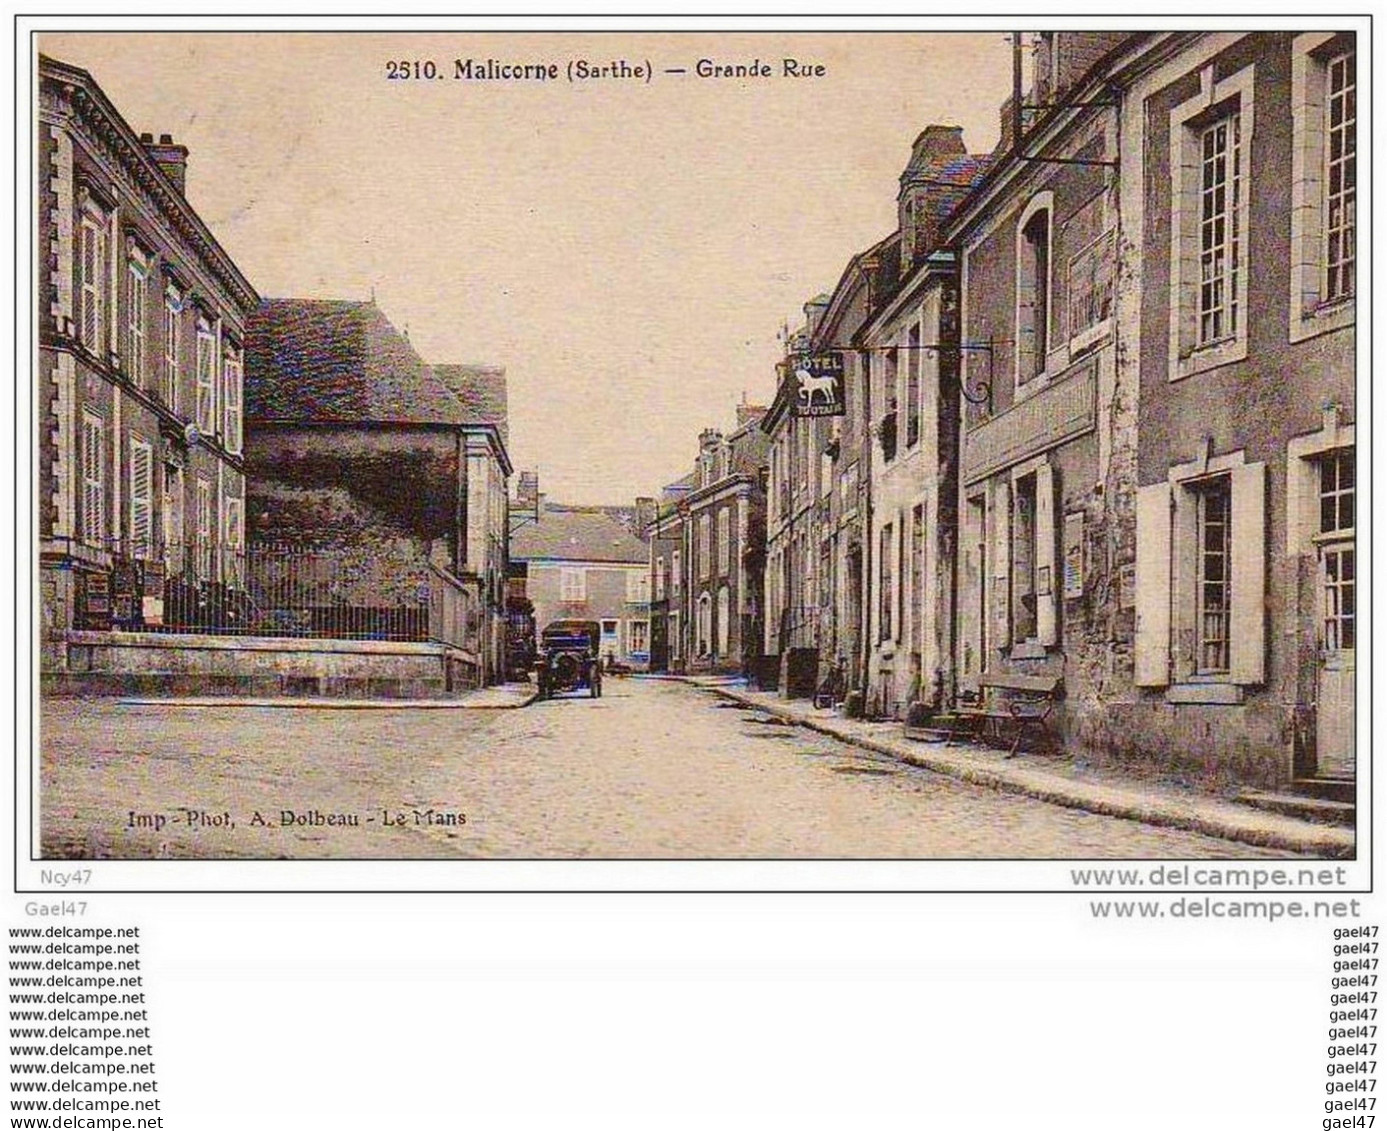 Cpa   (   Dep  72  )   MALICORNE  Grande Rue 1931 - Malicorne Sur Sarthe